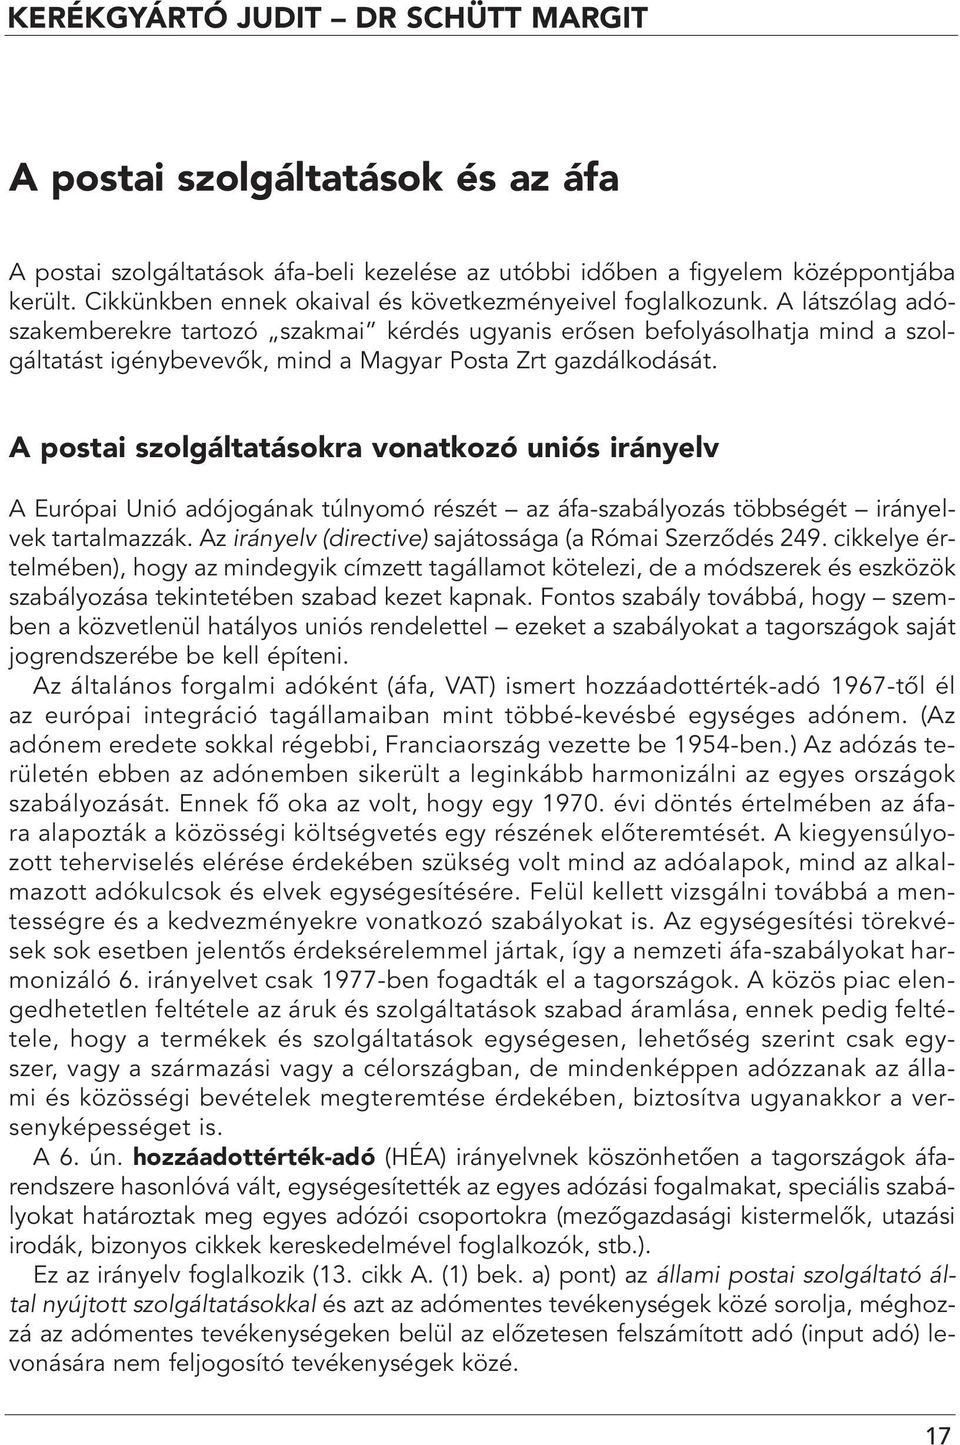 A látszólag adószakemberekre tartozó szakmai kérdés ugyanis erôsen befolyásolhatja mind a szolgáltatást igénybevevôk, mind a Magyar Posta Zrt gazdálkodását.